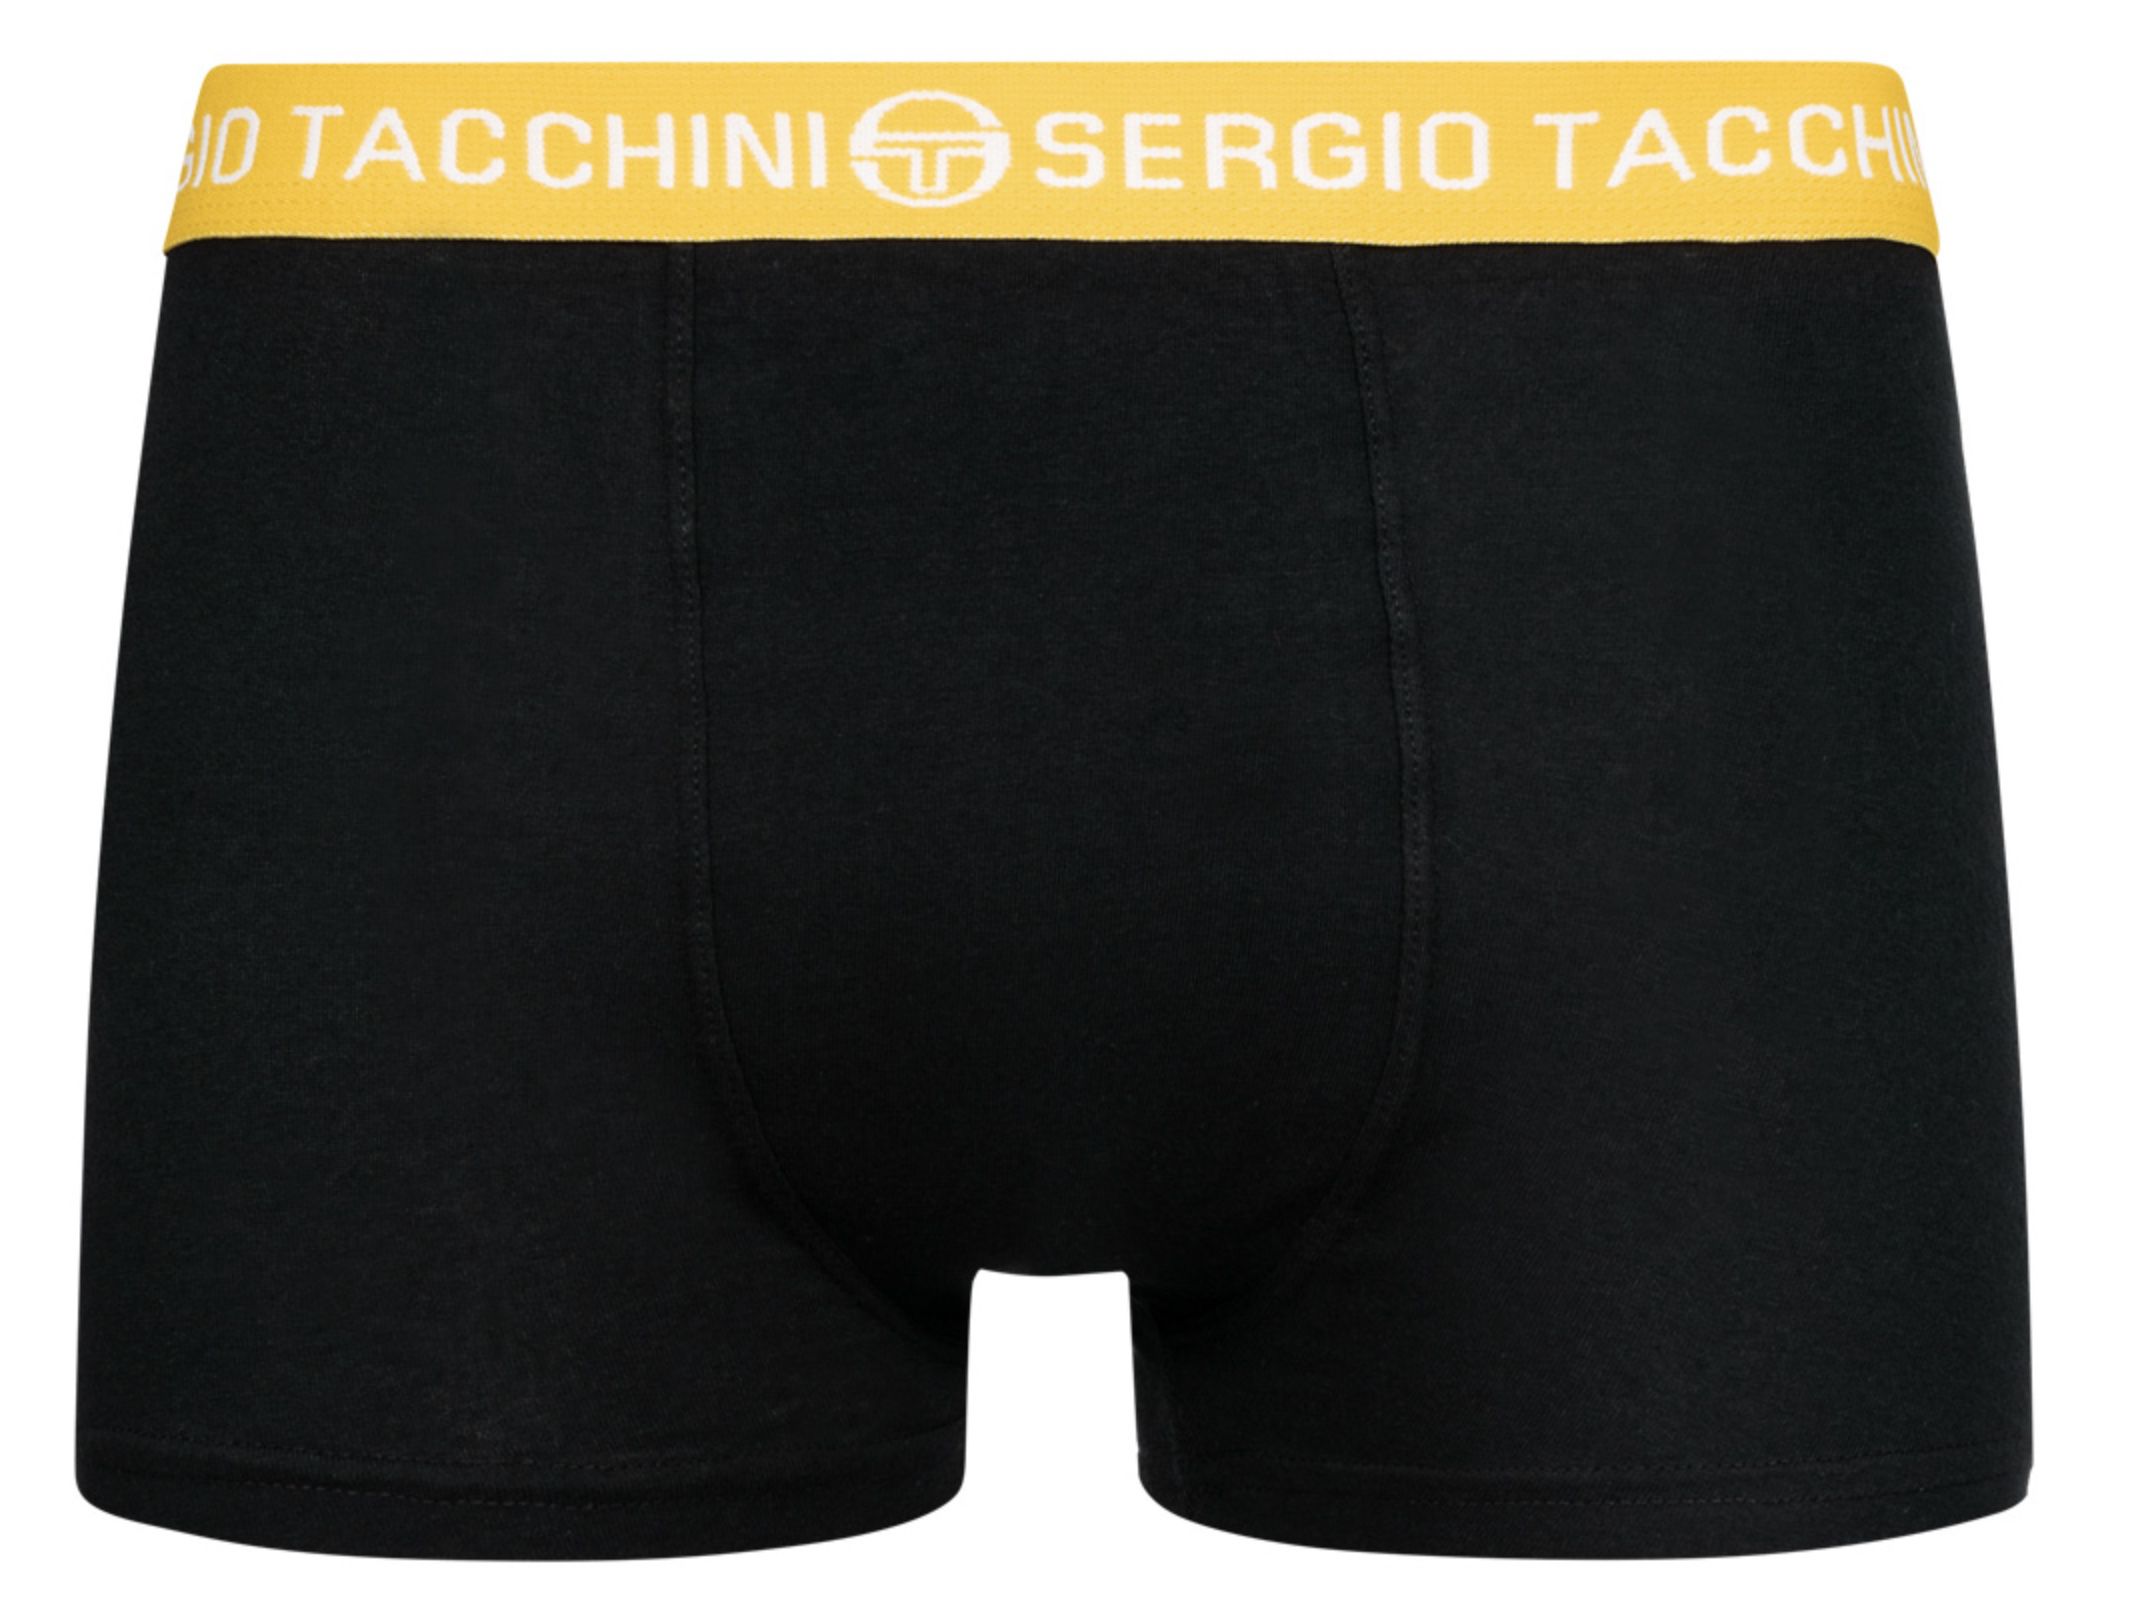 6er Pack Sergio Tacchini Boxershorts für 11,11€ (statt 26€) oder 36er Pack für 61,66€